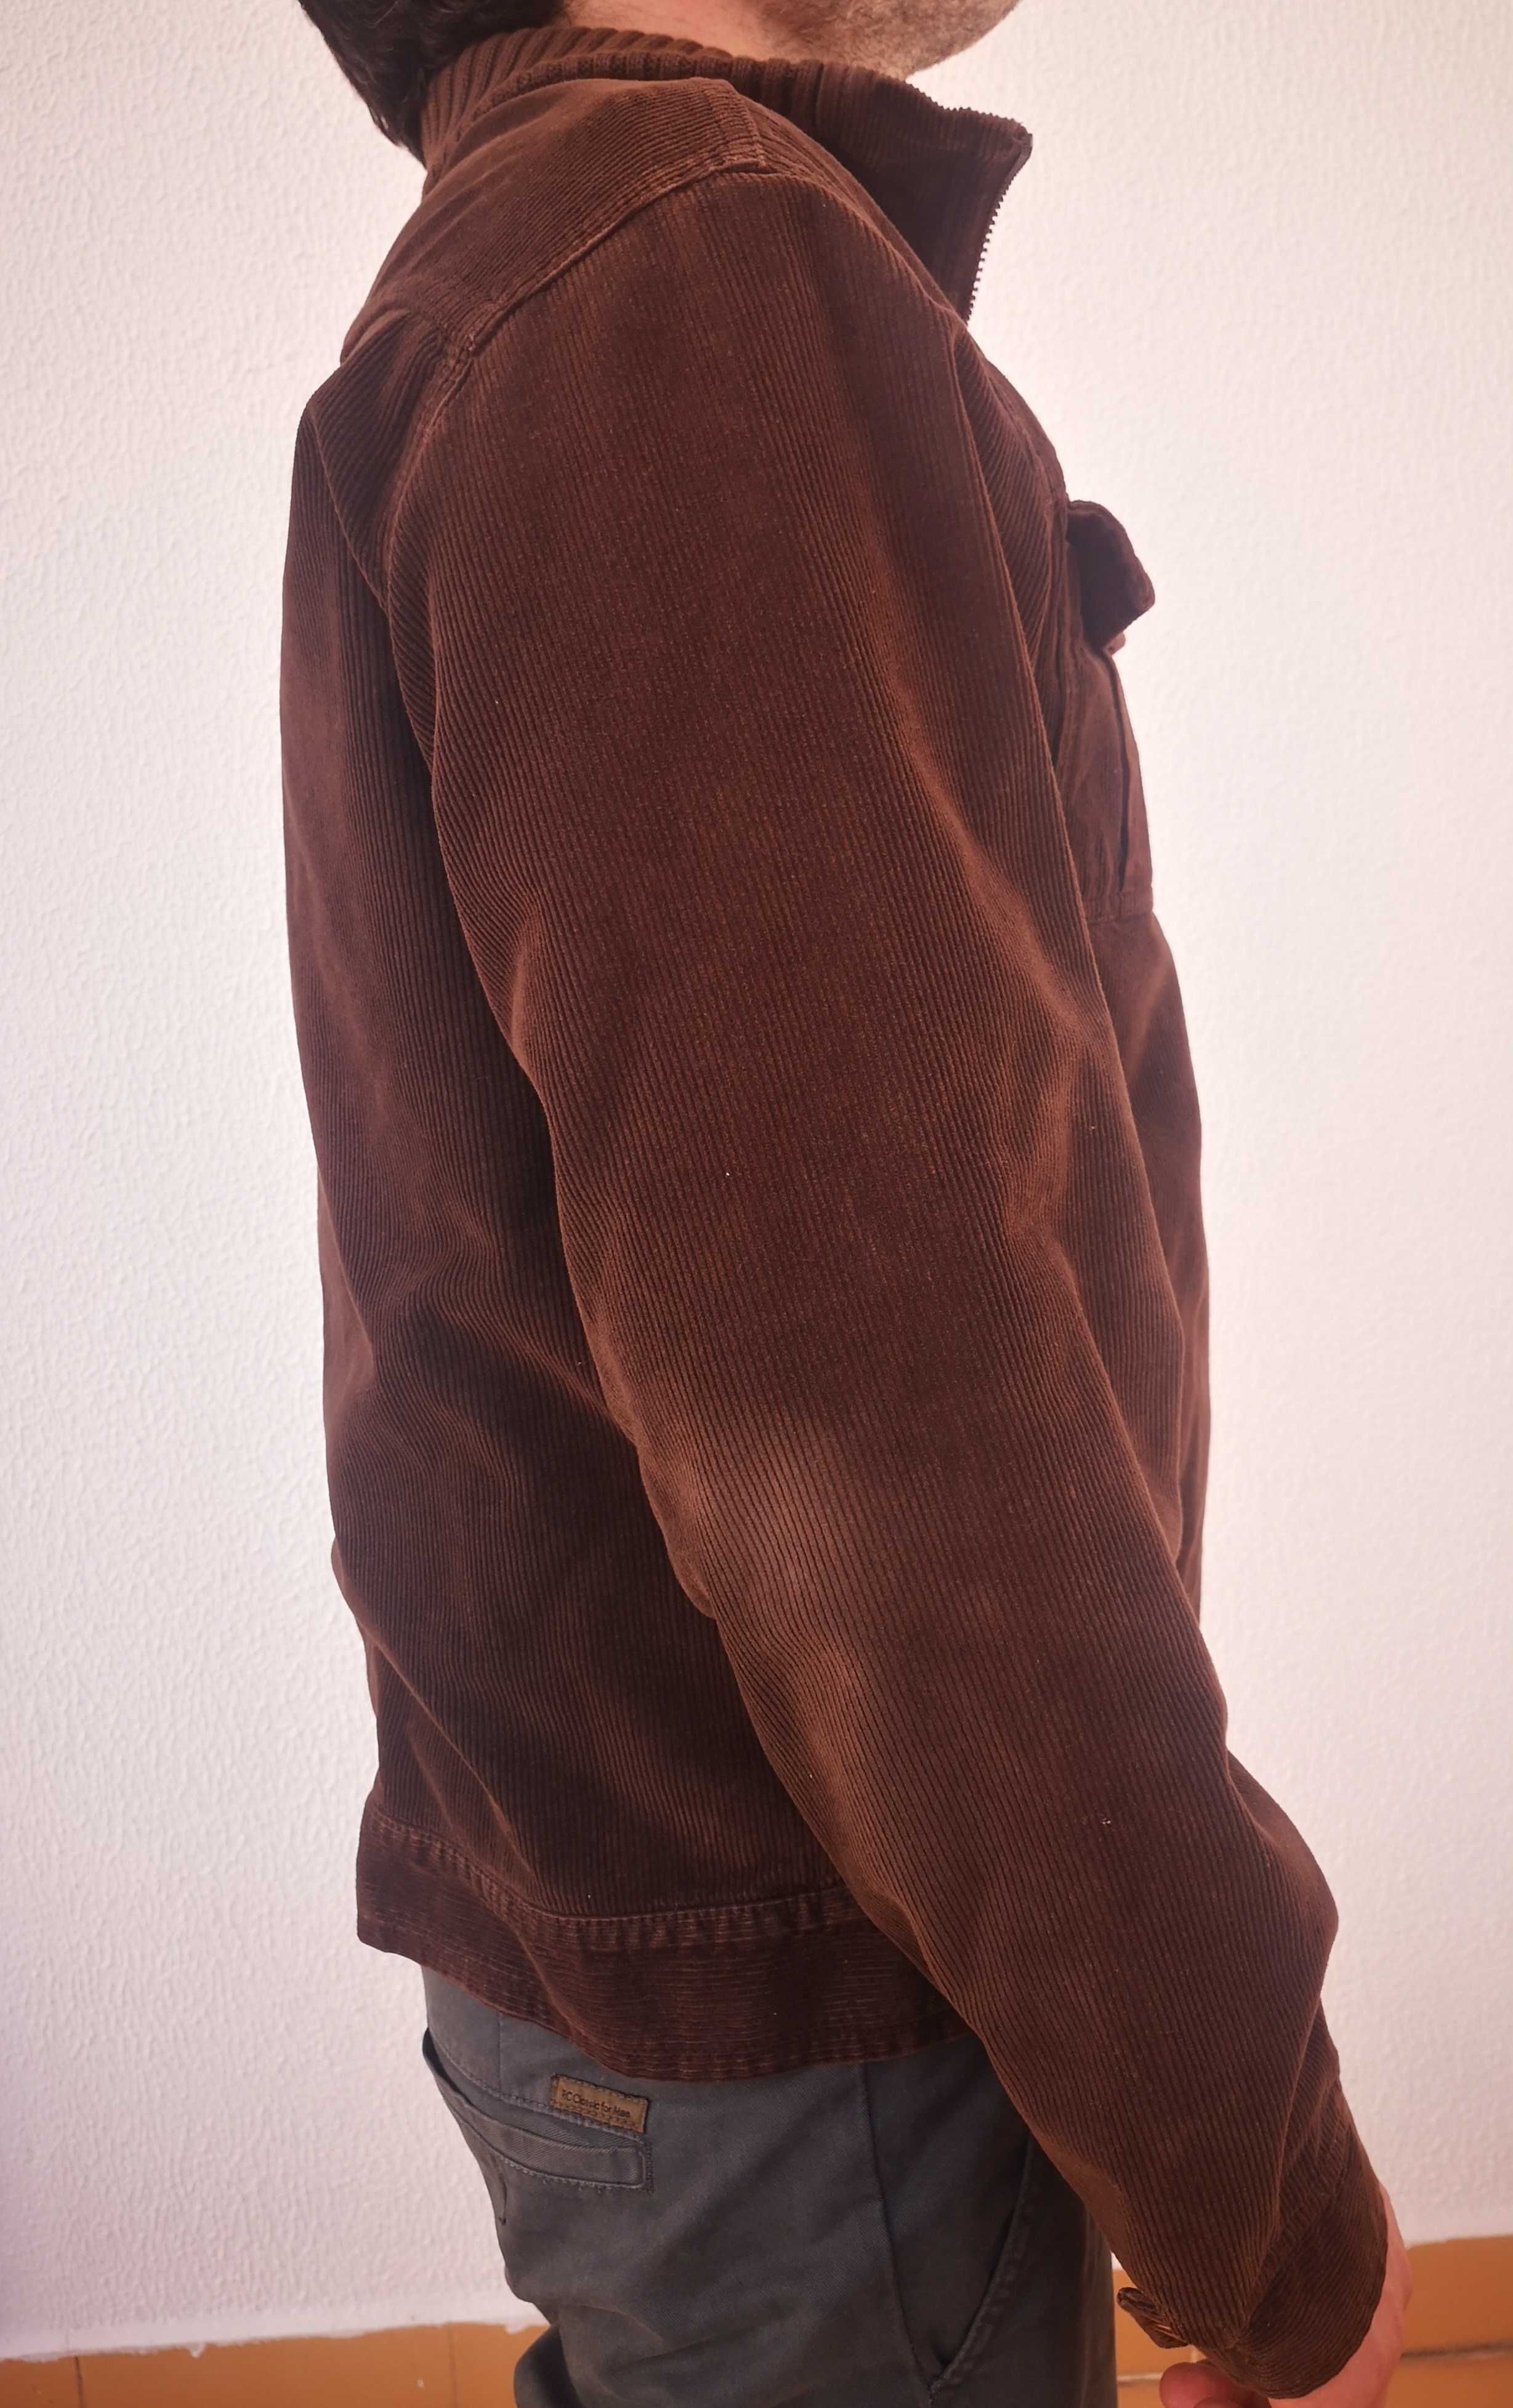 Casaco castanho - Homem - Tamanho M - Fabricado em Portugal